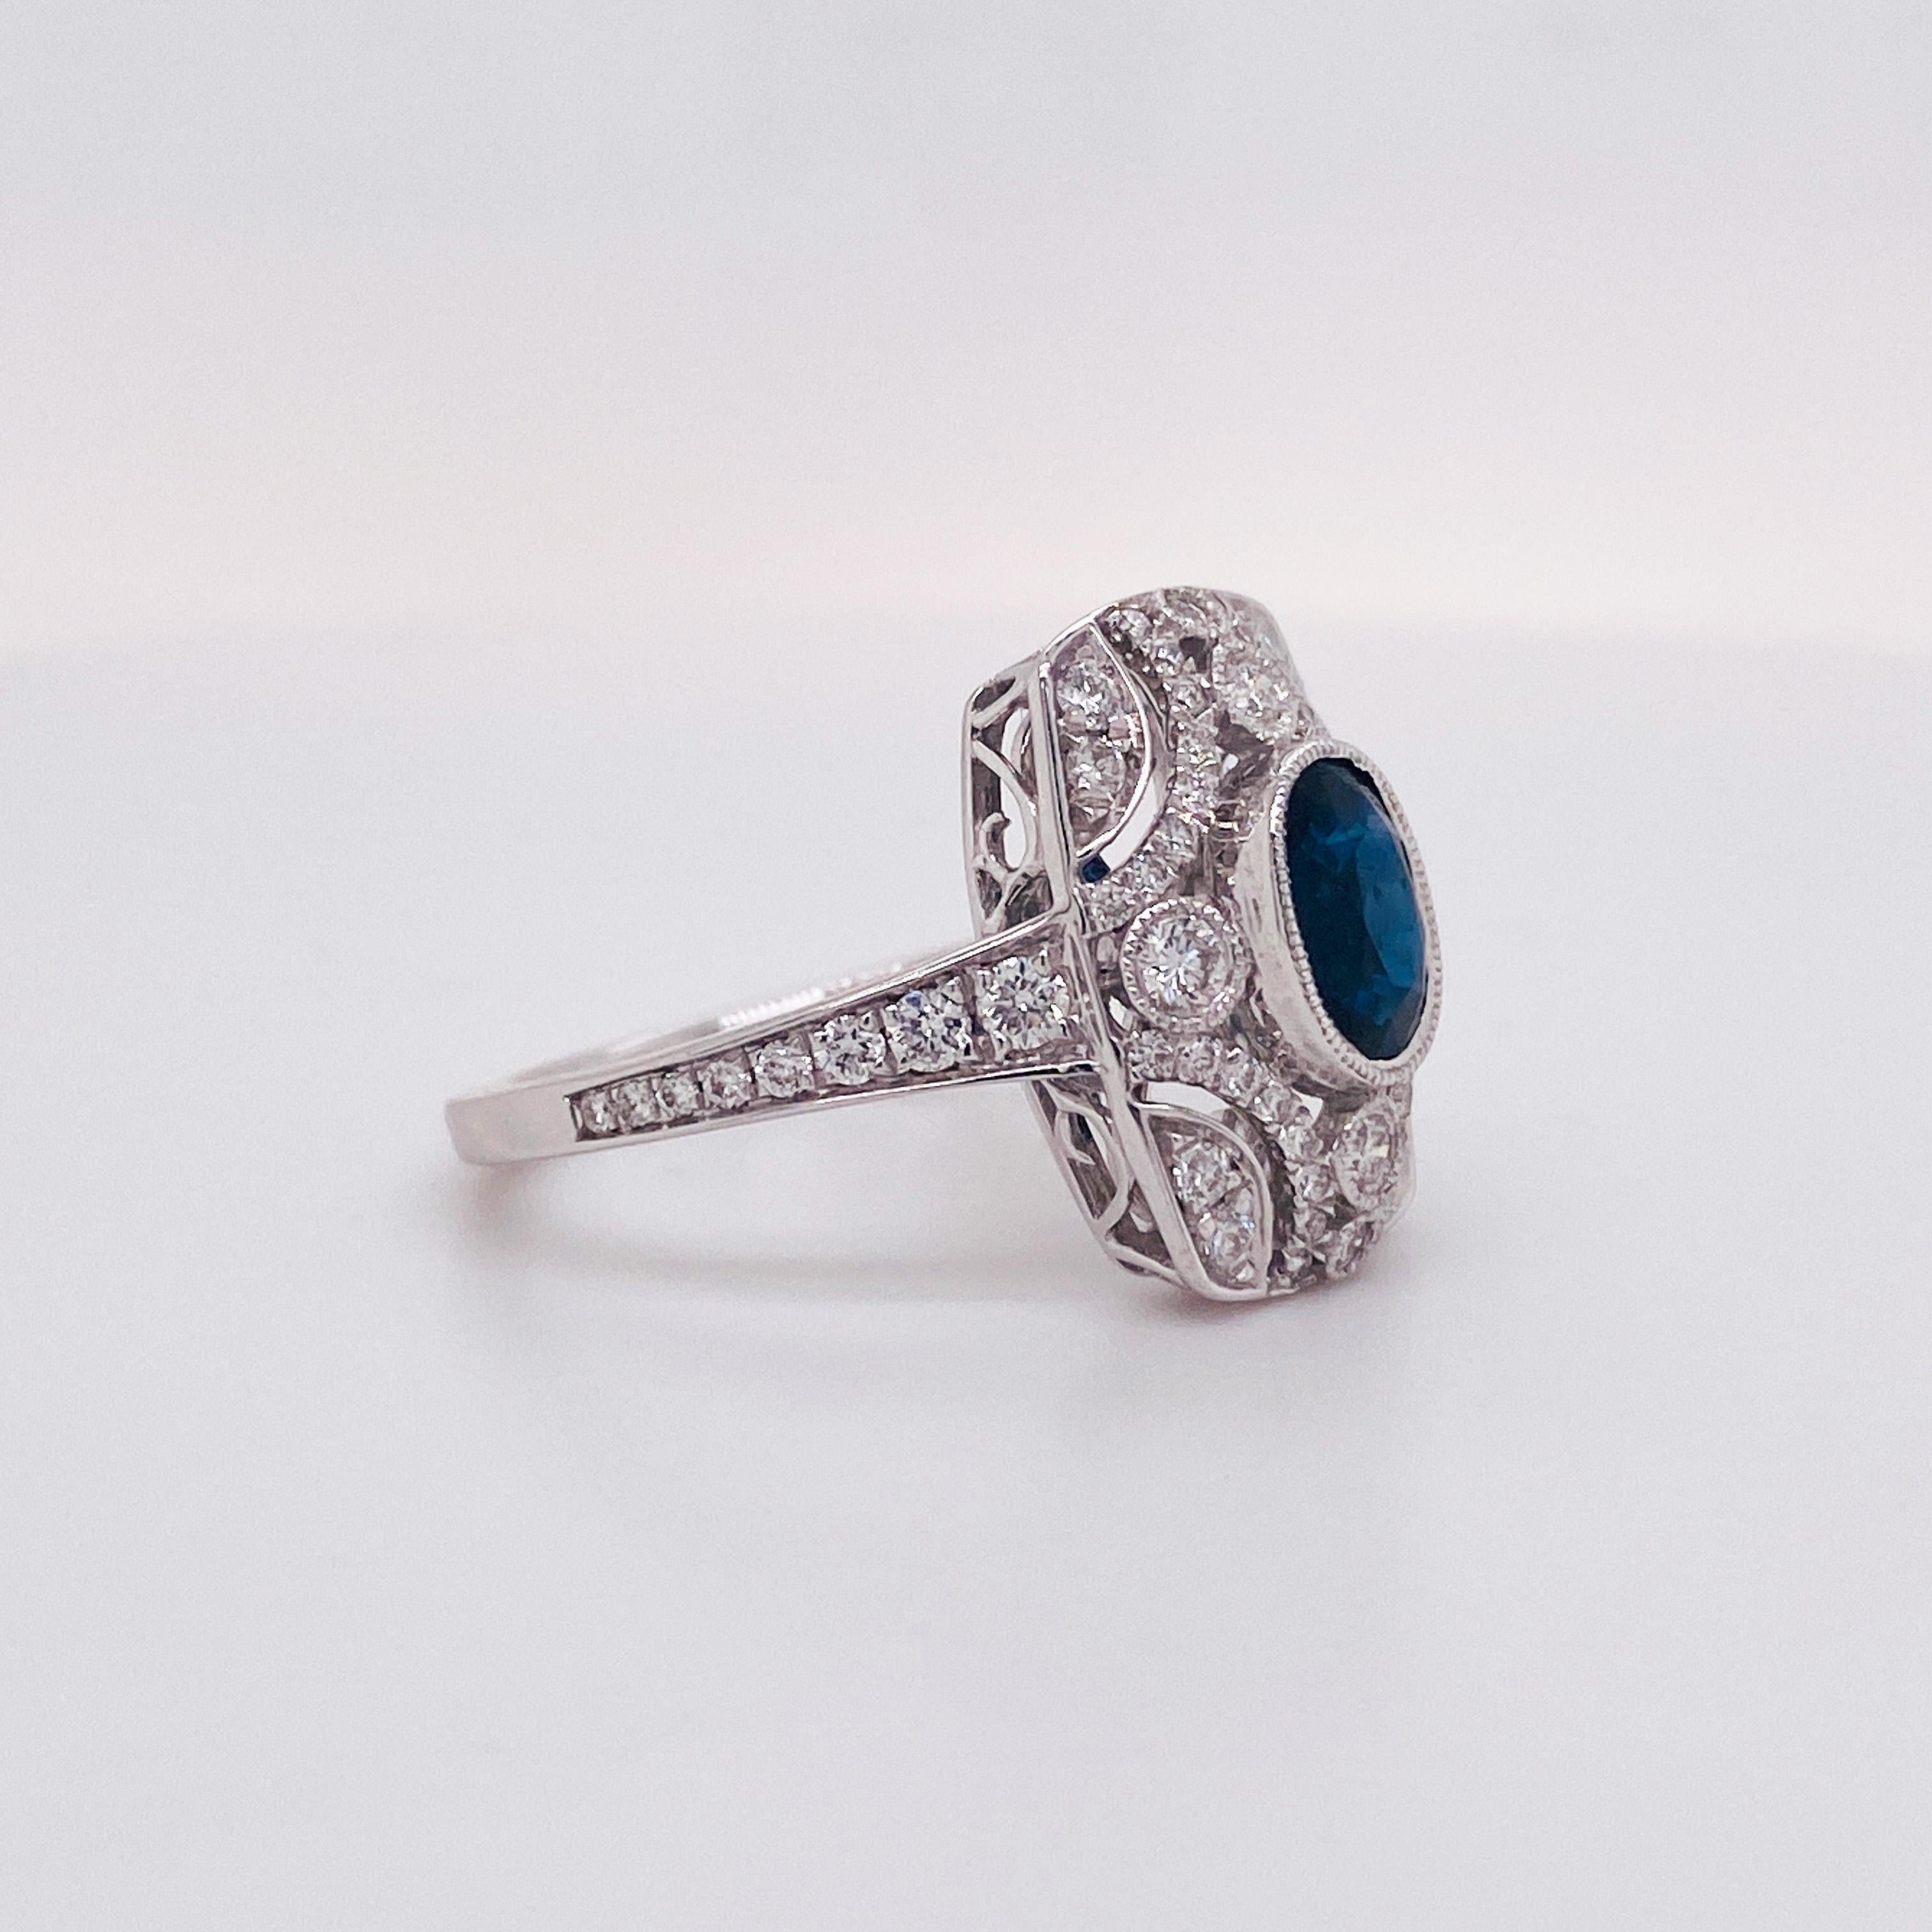 Ein zeitloser, von der Antike inspirierter Verlobungsring mit 1,00 Karat Saphir und Diamant!
Dieser Ring ist wirklich etwas Besonderes mit einem ovalen, tiefblauen, echten Saphir von 1,16 Karat, eingefasst in eine Lünettenfassung aus 18 Karat